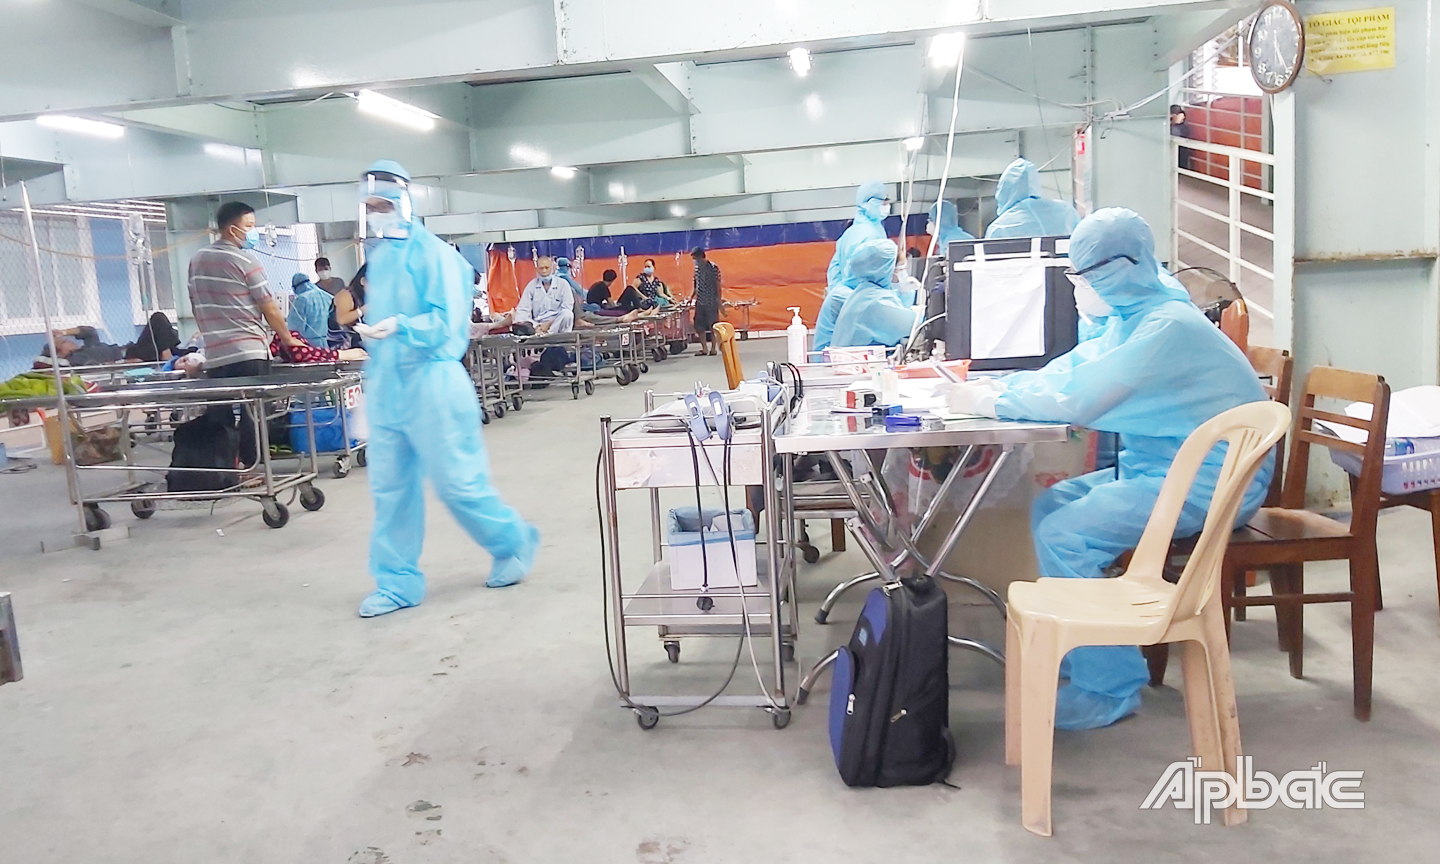 Bệnh viện đa khoa trung tâm Tiền Giang bố trí khu vực tiếp nhận bệnh nhân cấp cứu dã chiến trong lúc chờ kết quả tầm soát Covid-19 trước khi nhập viện.